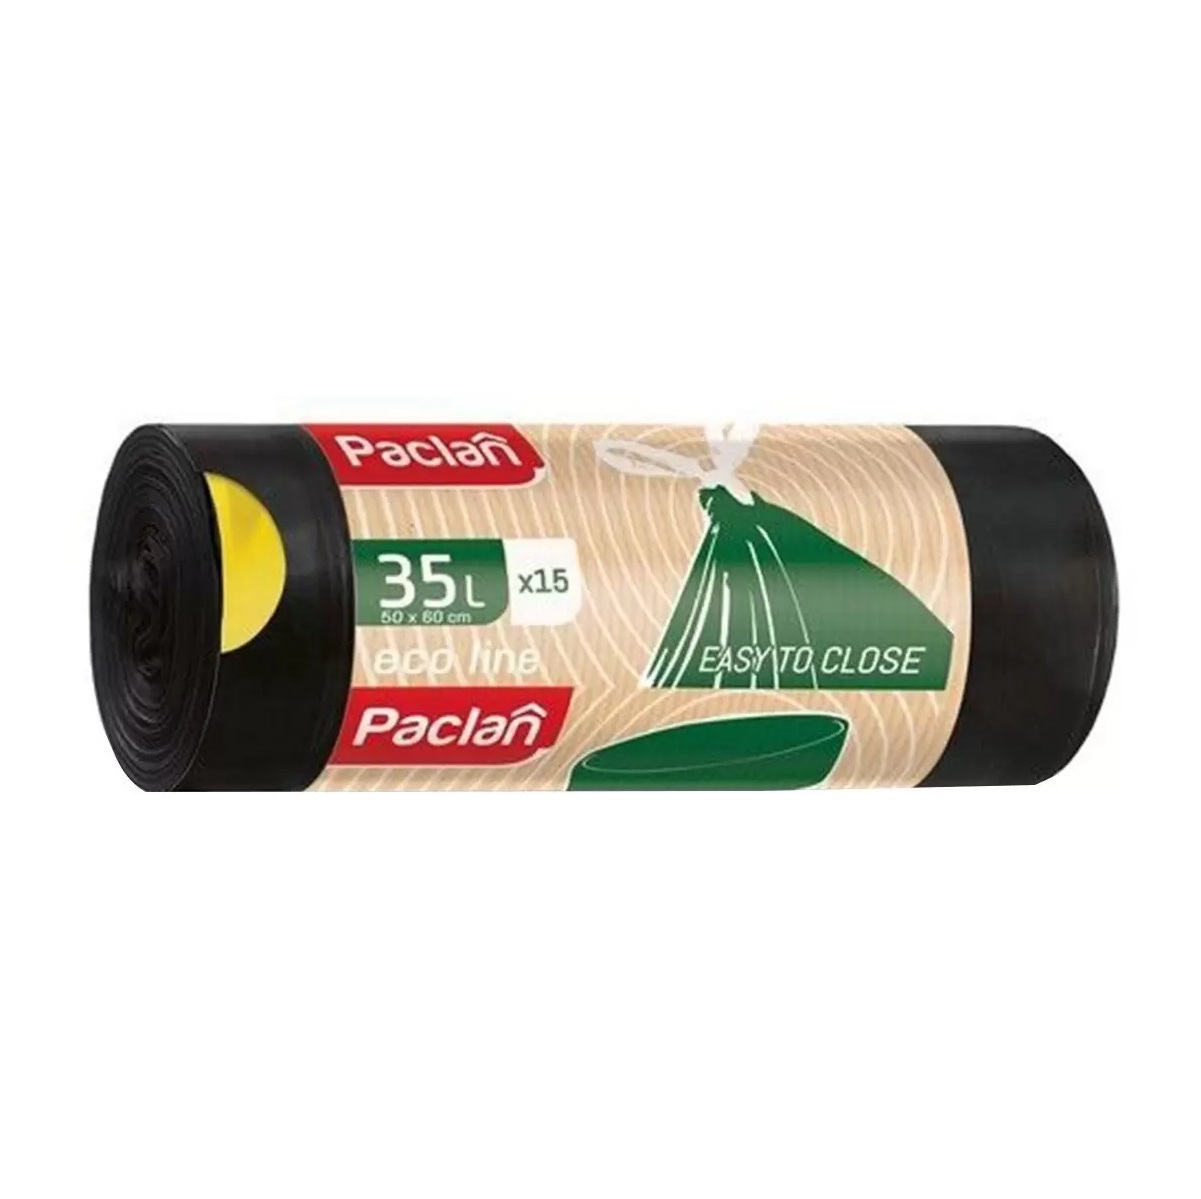 Мешки мусорные PACLAN Eco line 35л 15шт мешки для мусора paclan